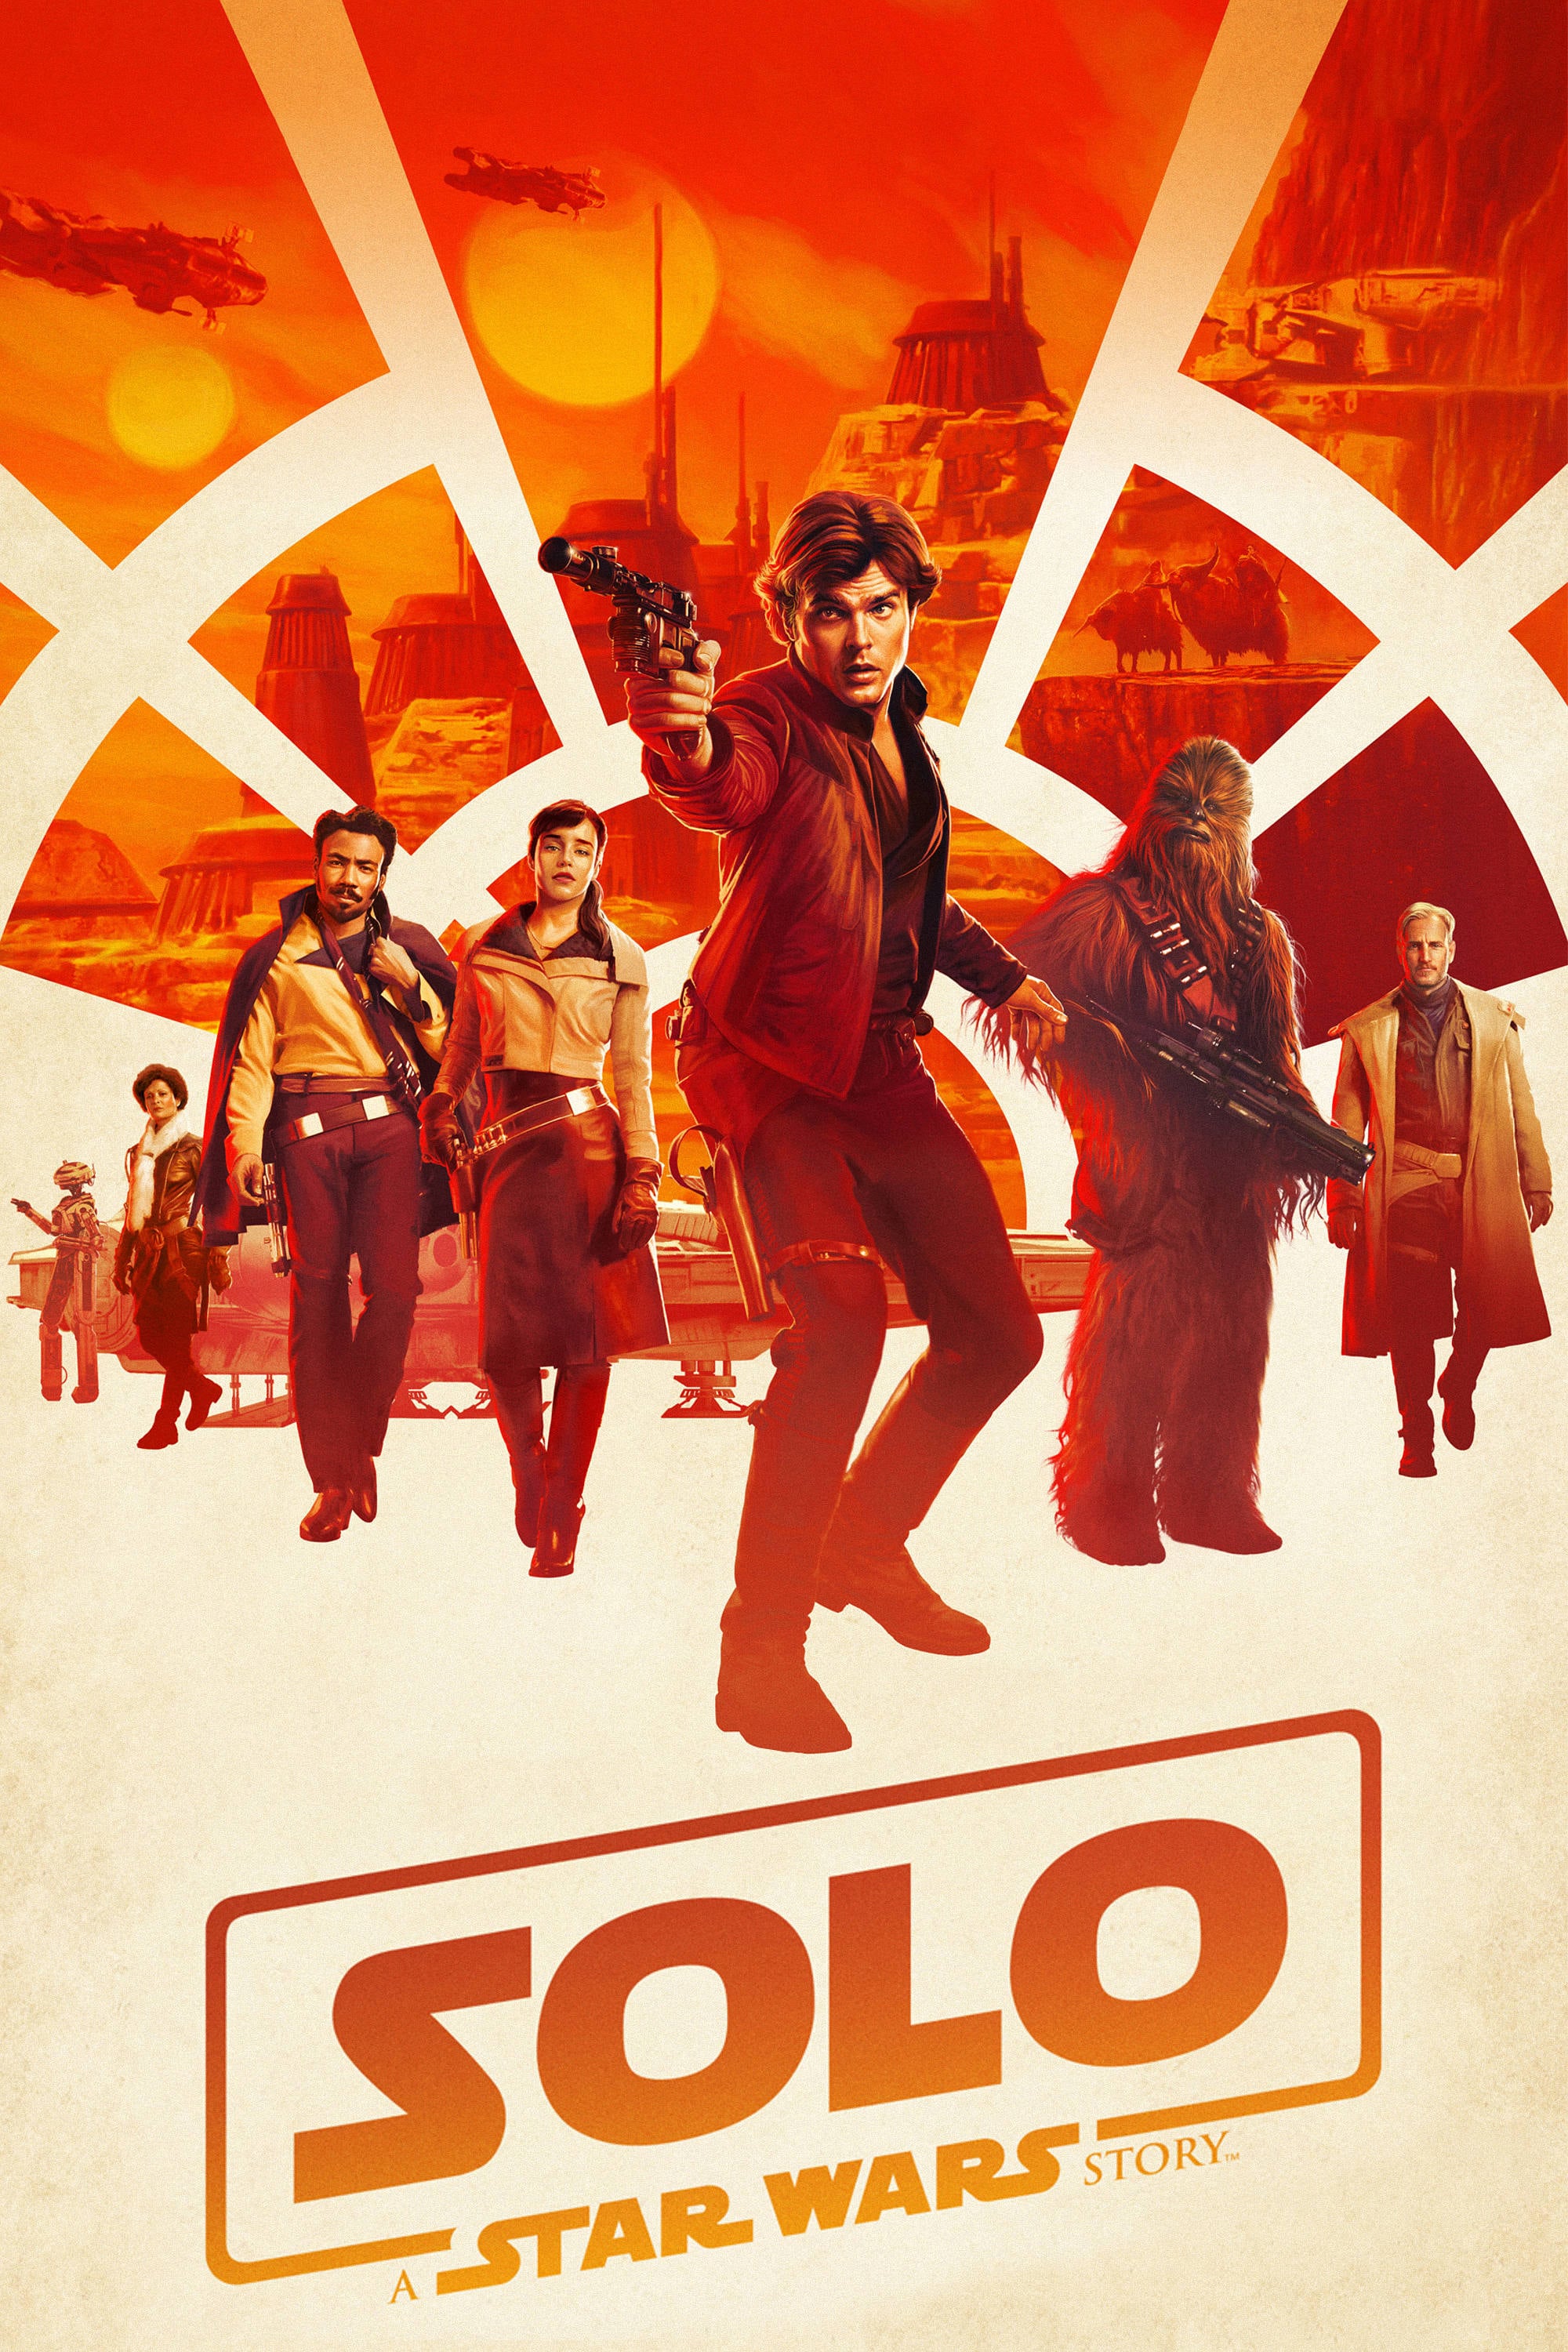 Caratula de SOLO: A STAR WARS STORY (Han Solo: Una historia de Star Wars) 